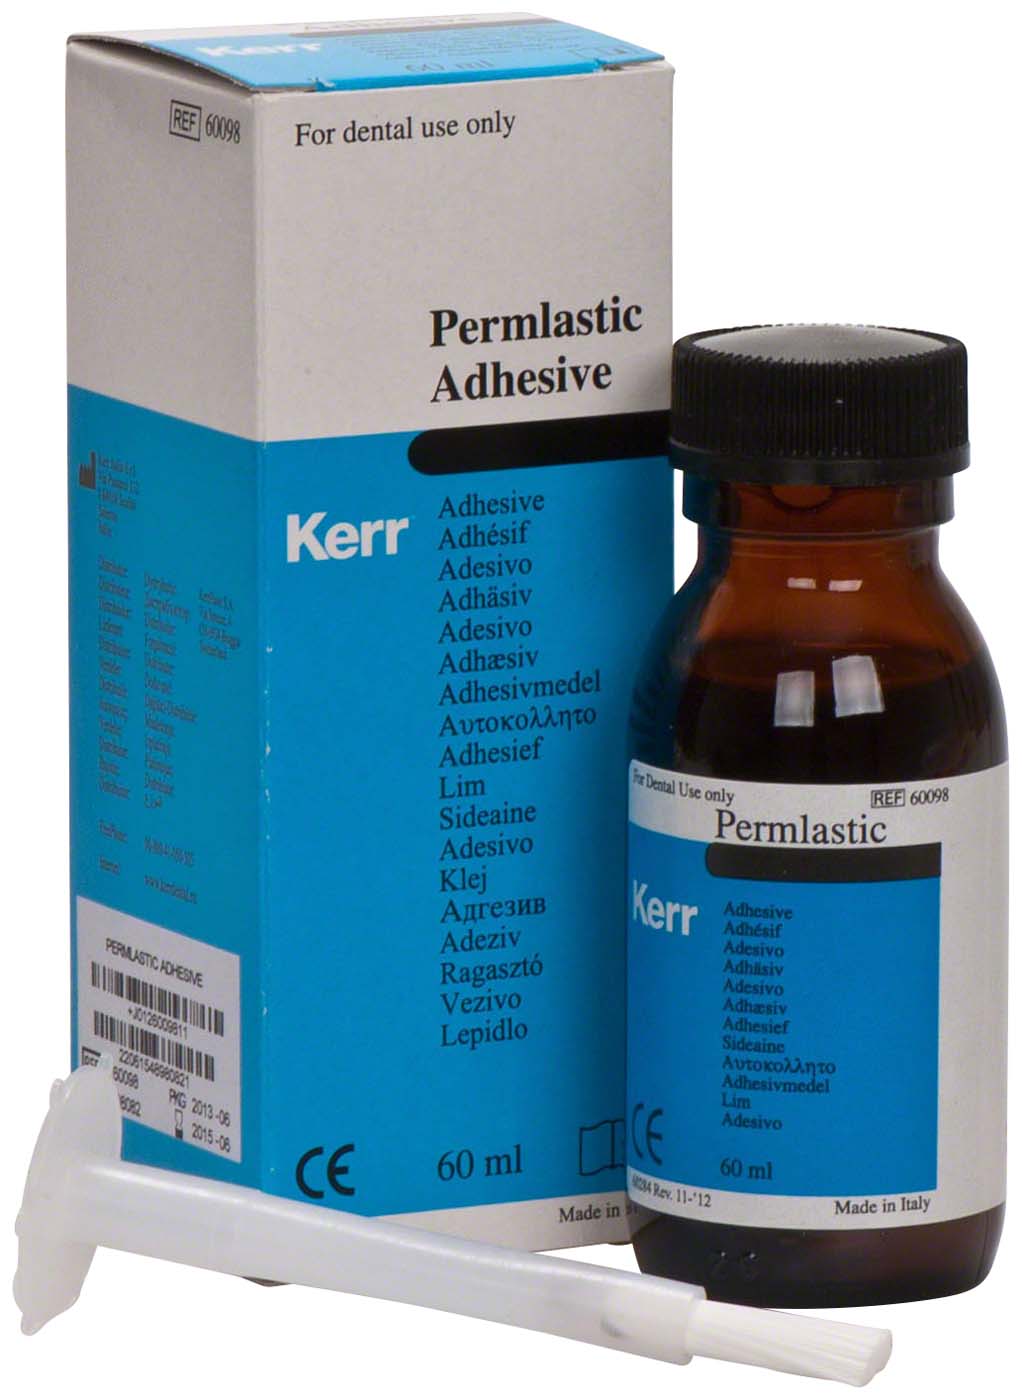 Permalastic Adhesive Kerr